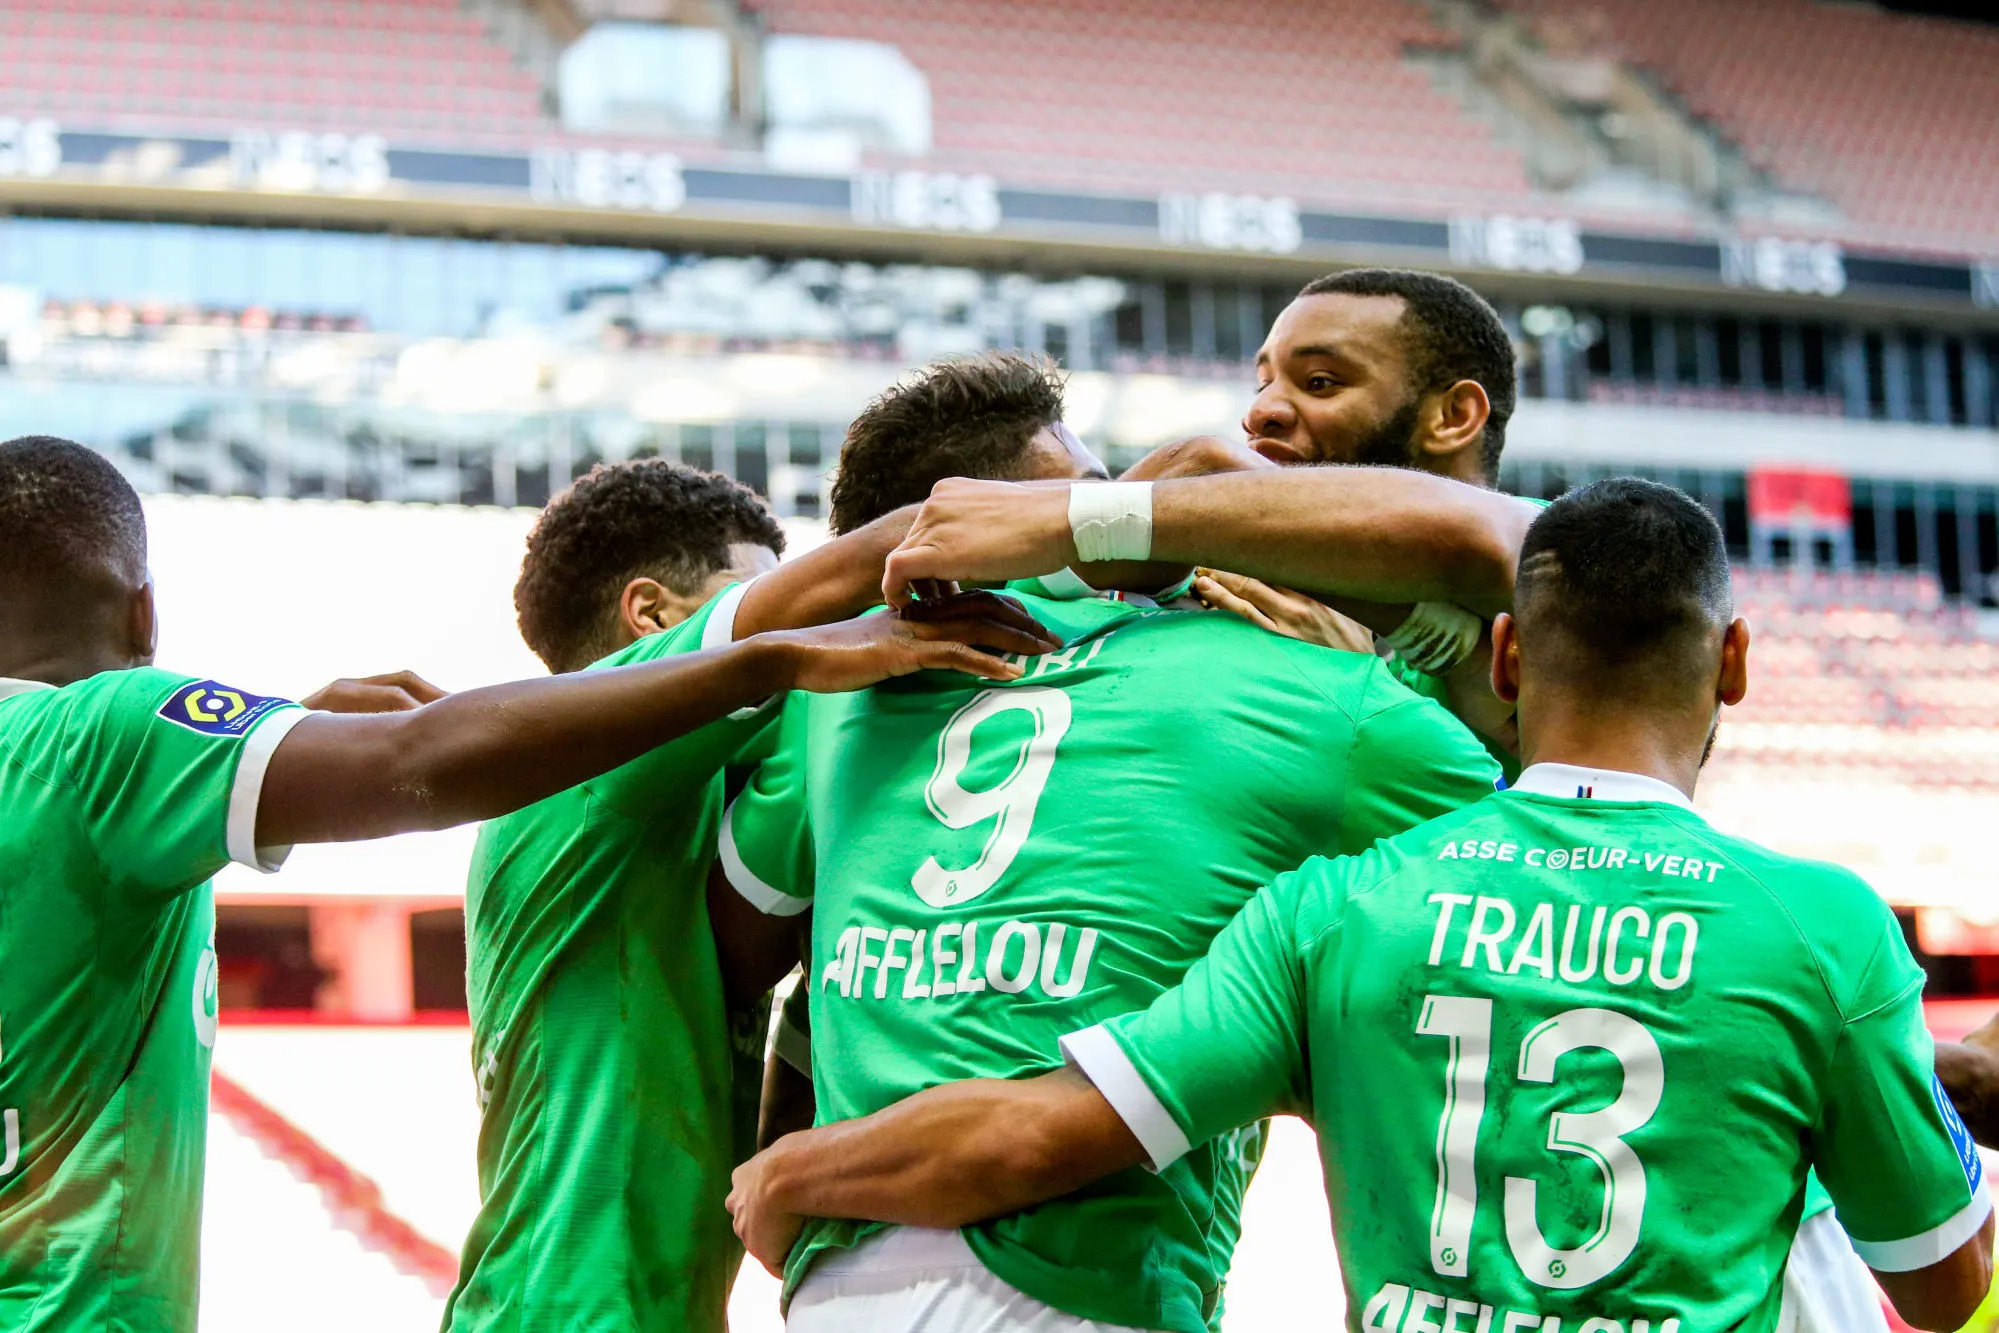 Pronostic Lorient Saint-Étienne : Analyse, cotes et prono du match de Ligue 1